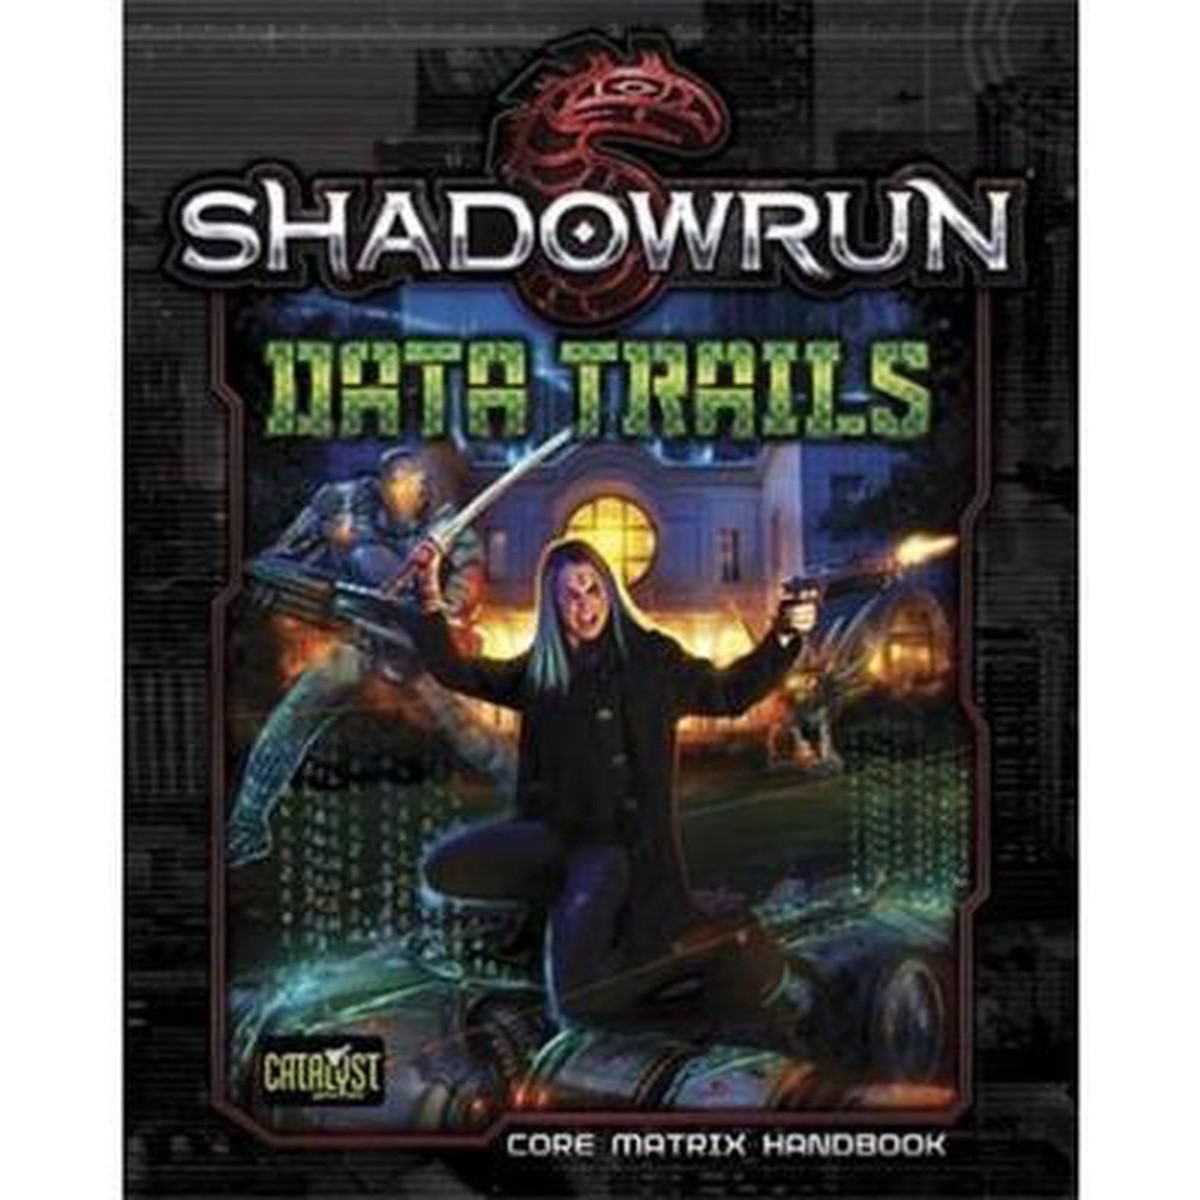 Shadowrun RPG 5th Edition Data Trails NEW Catalyst